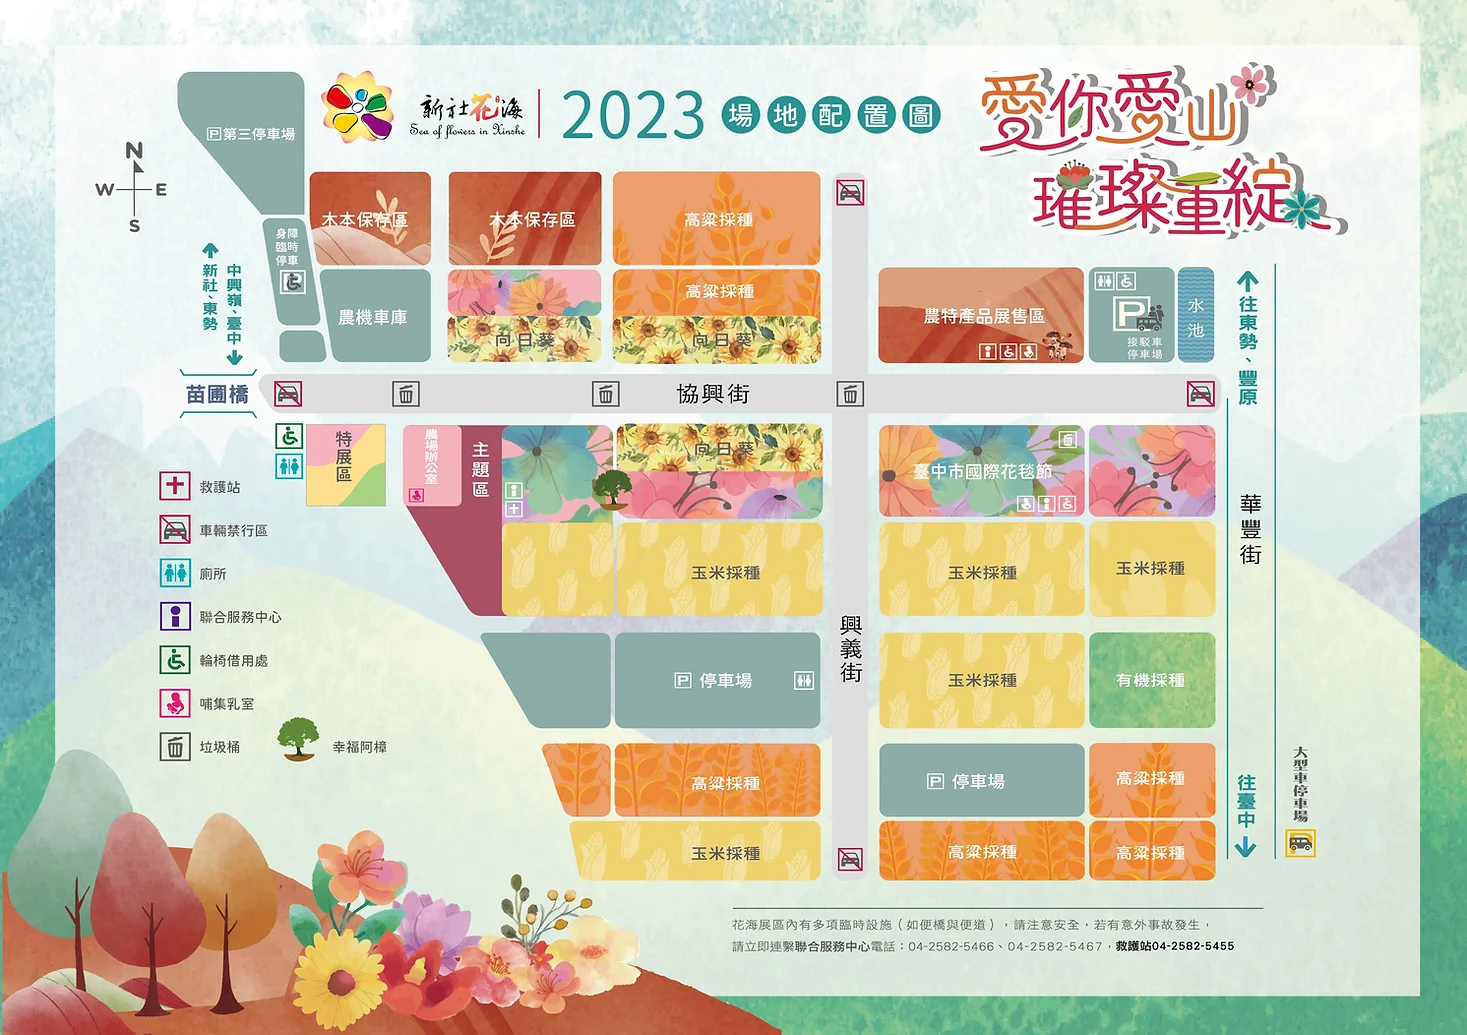 台中景點,台中國際花毯節,新社花海,2023新社花海